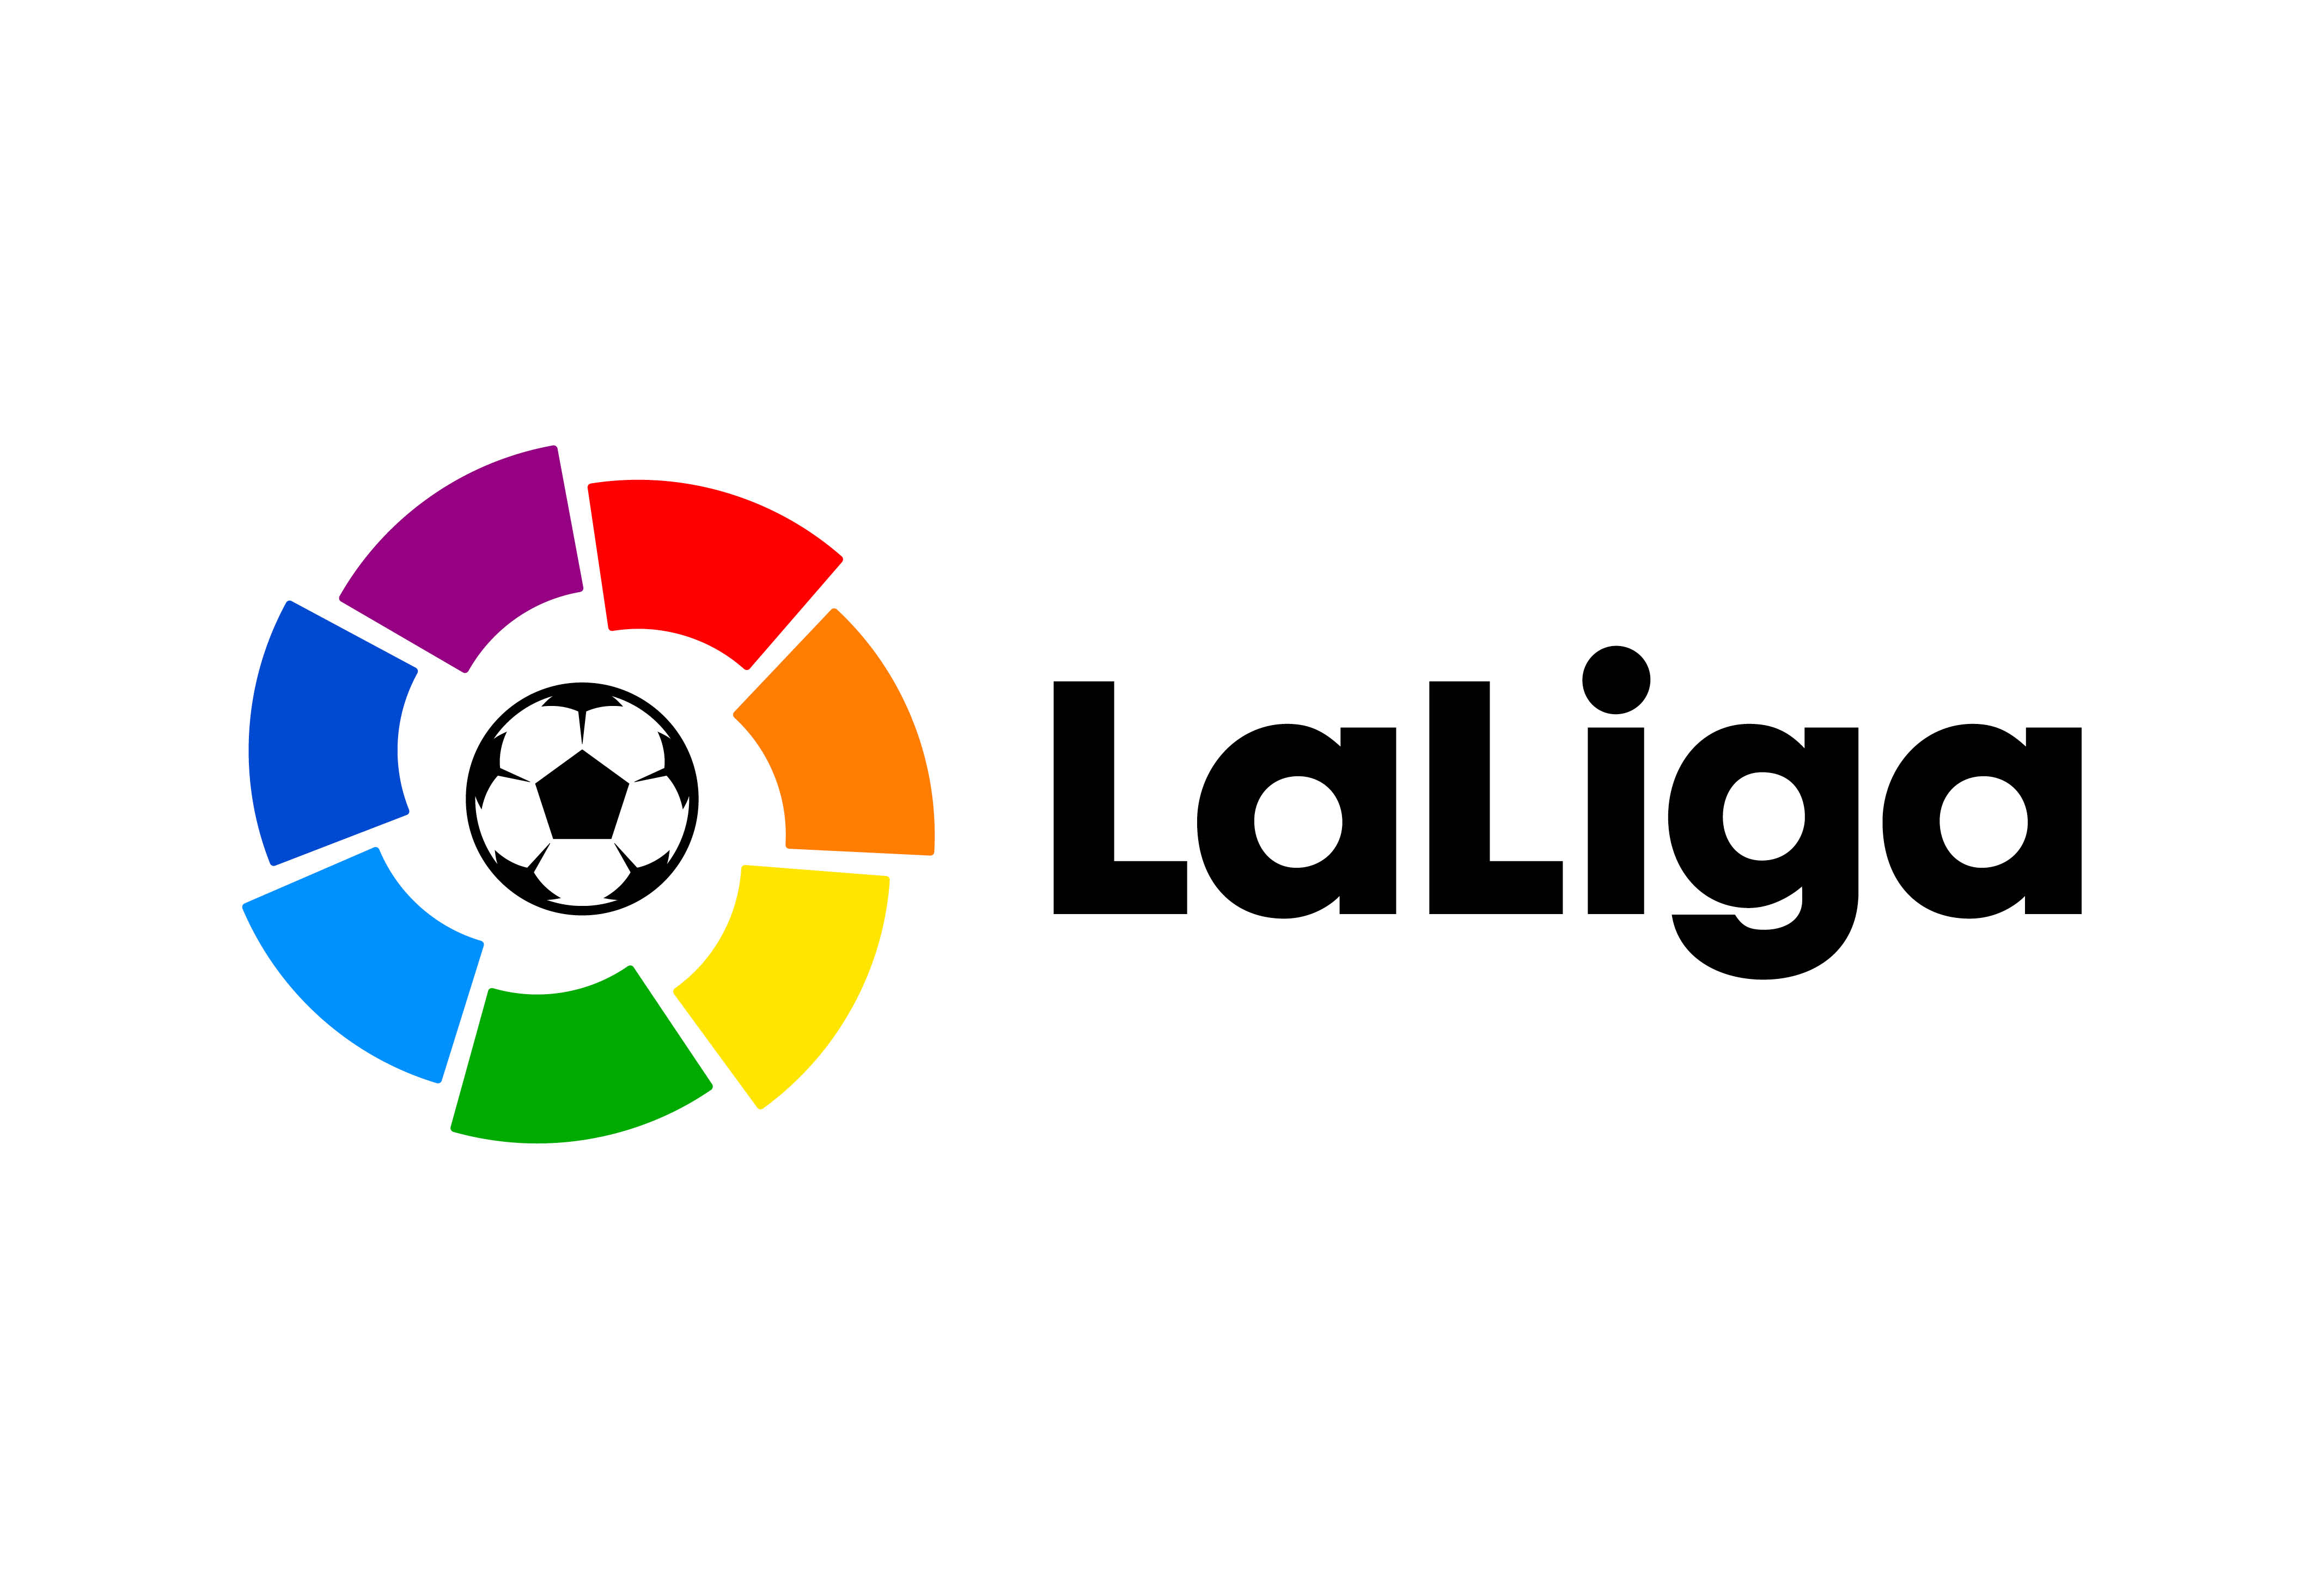 La Liga Brand Logo